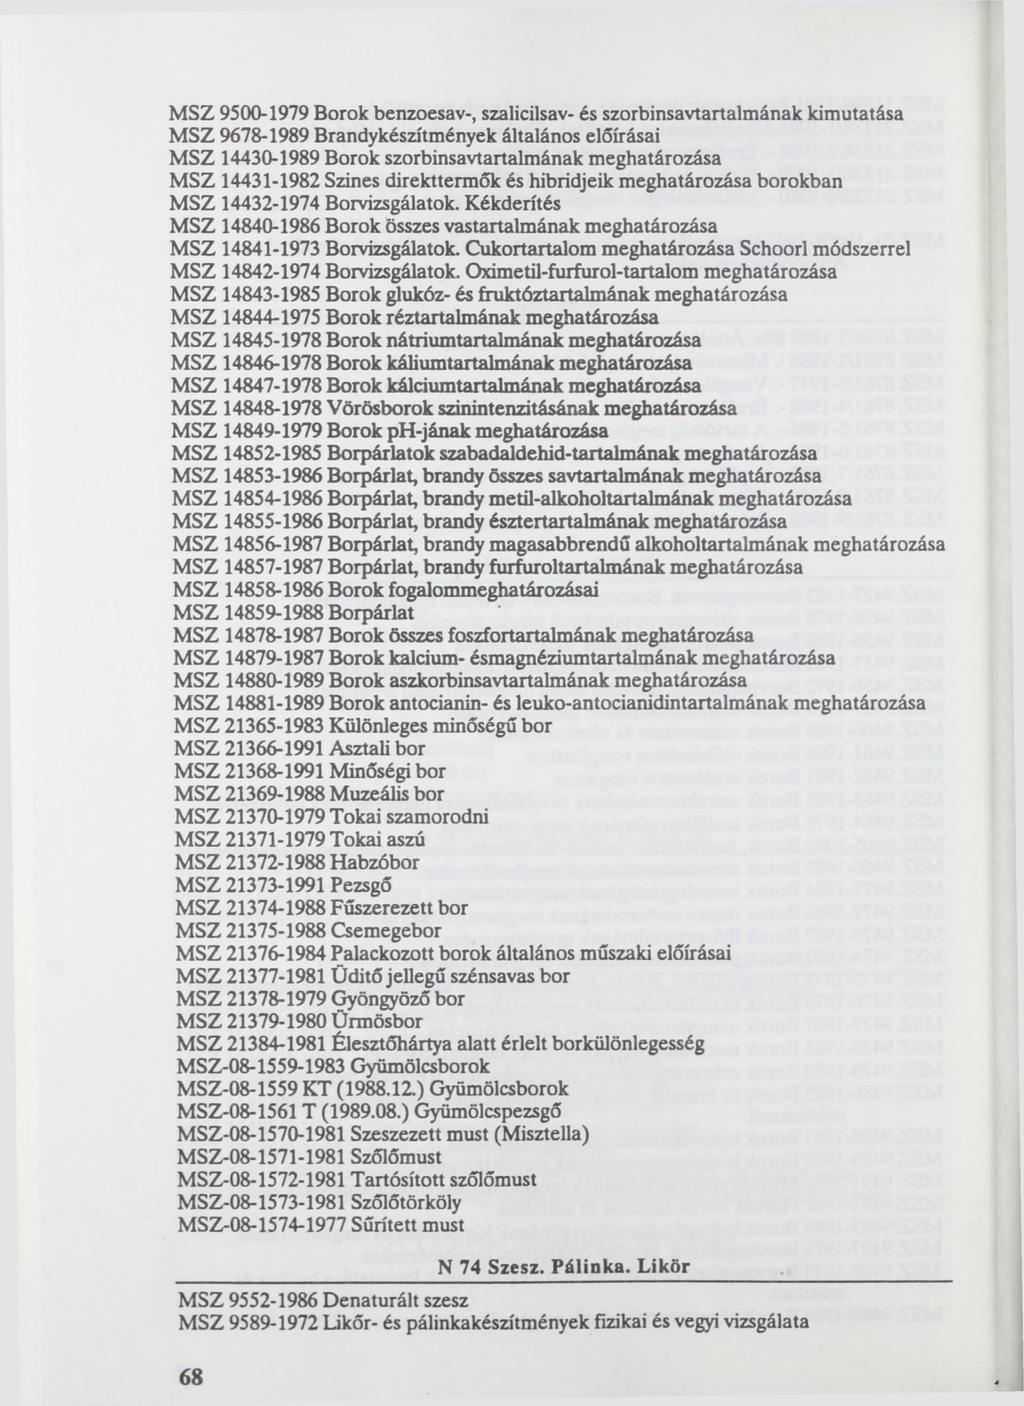 MSZ 9500-1979 Borok benzoesav-, szalicilsav- és szorbinsavtartalmának kimutatása MSZ 9678-1989 Brandykészítmények általános előírásai MSZ 14430-1989 Borok szorbinsavtartalmának MSZ 14431-1982 Színes